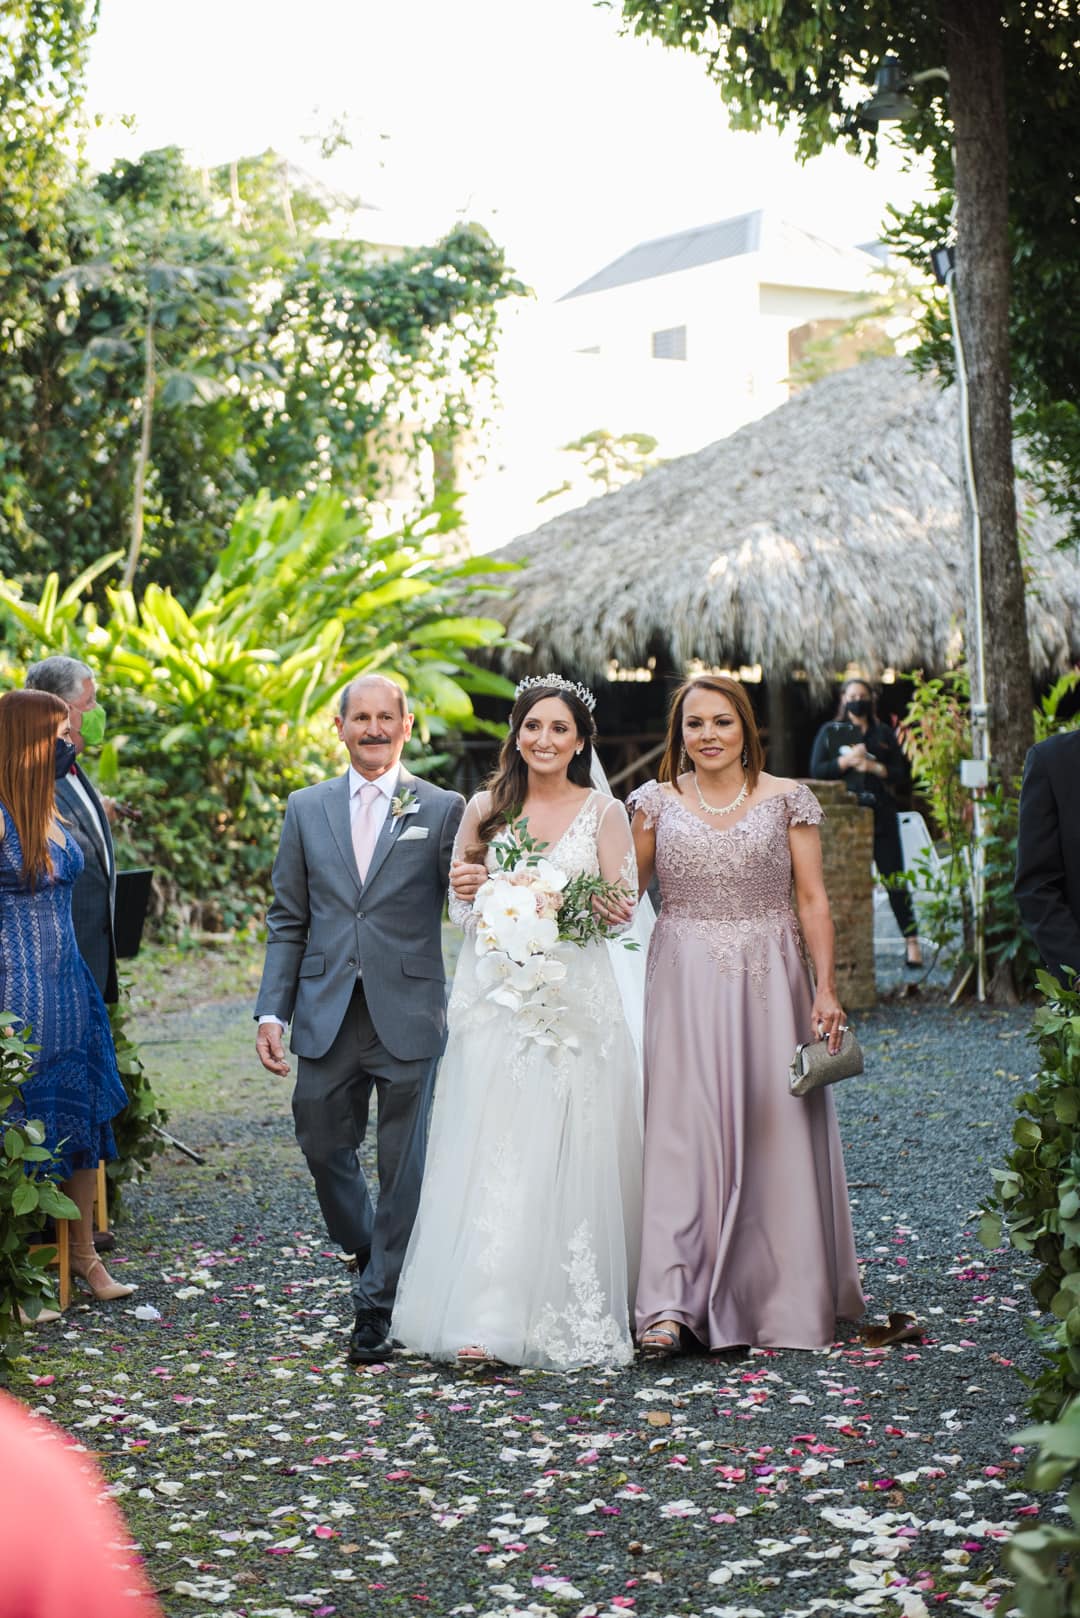 fotografia de bodas en fundacion luis munoz marin en trujillo alto puerto rico